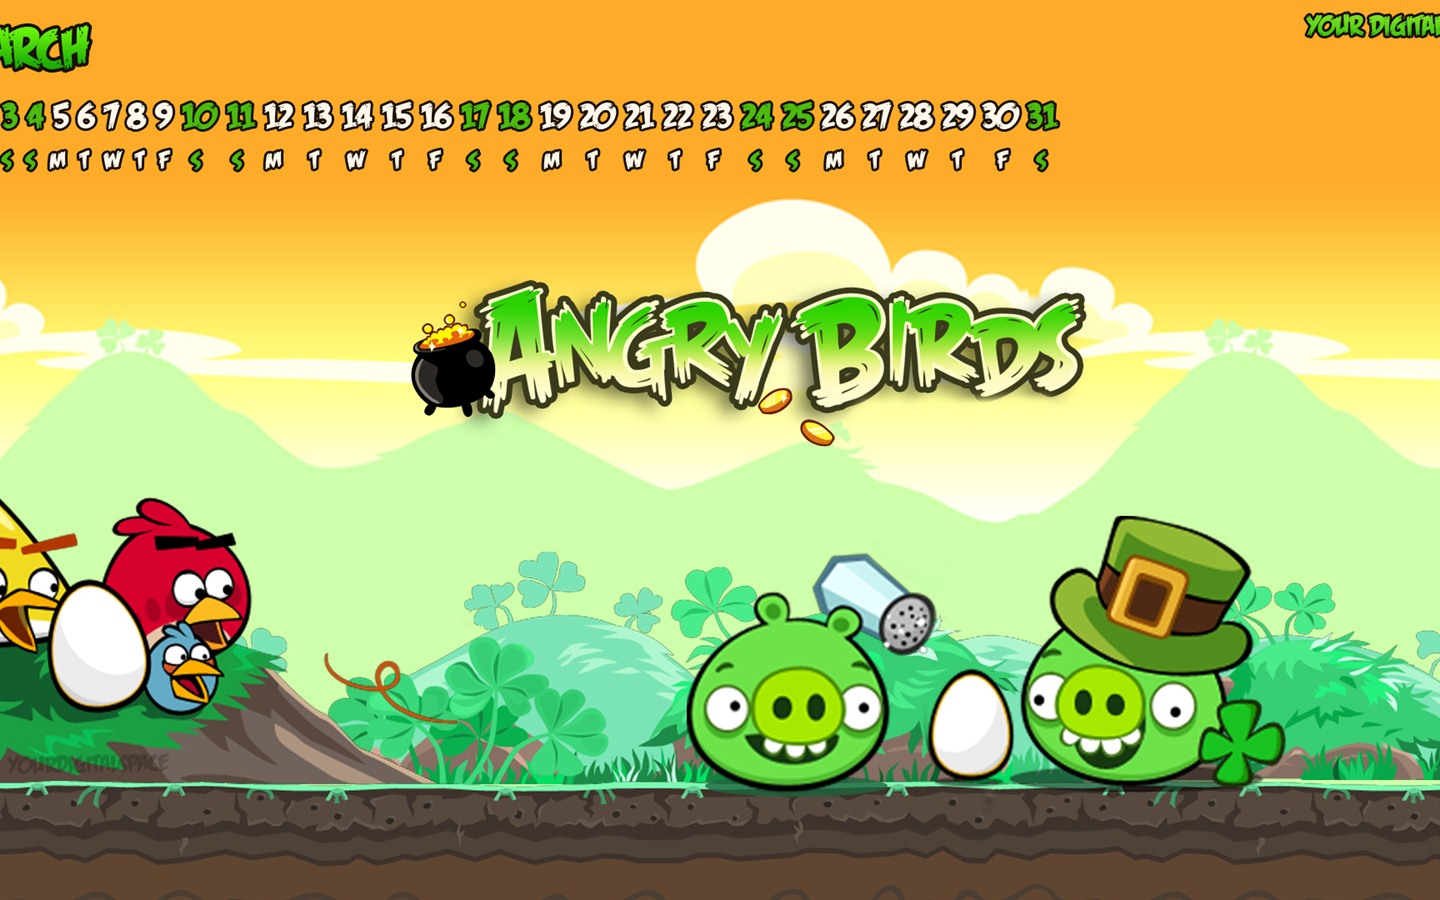 Angry Birds 2012 calendario fondos de escritorio #8 - 1440x900